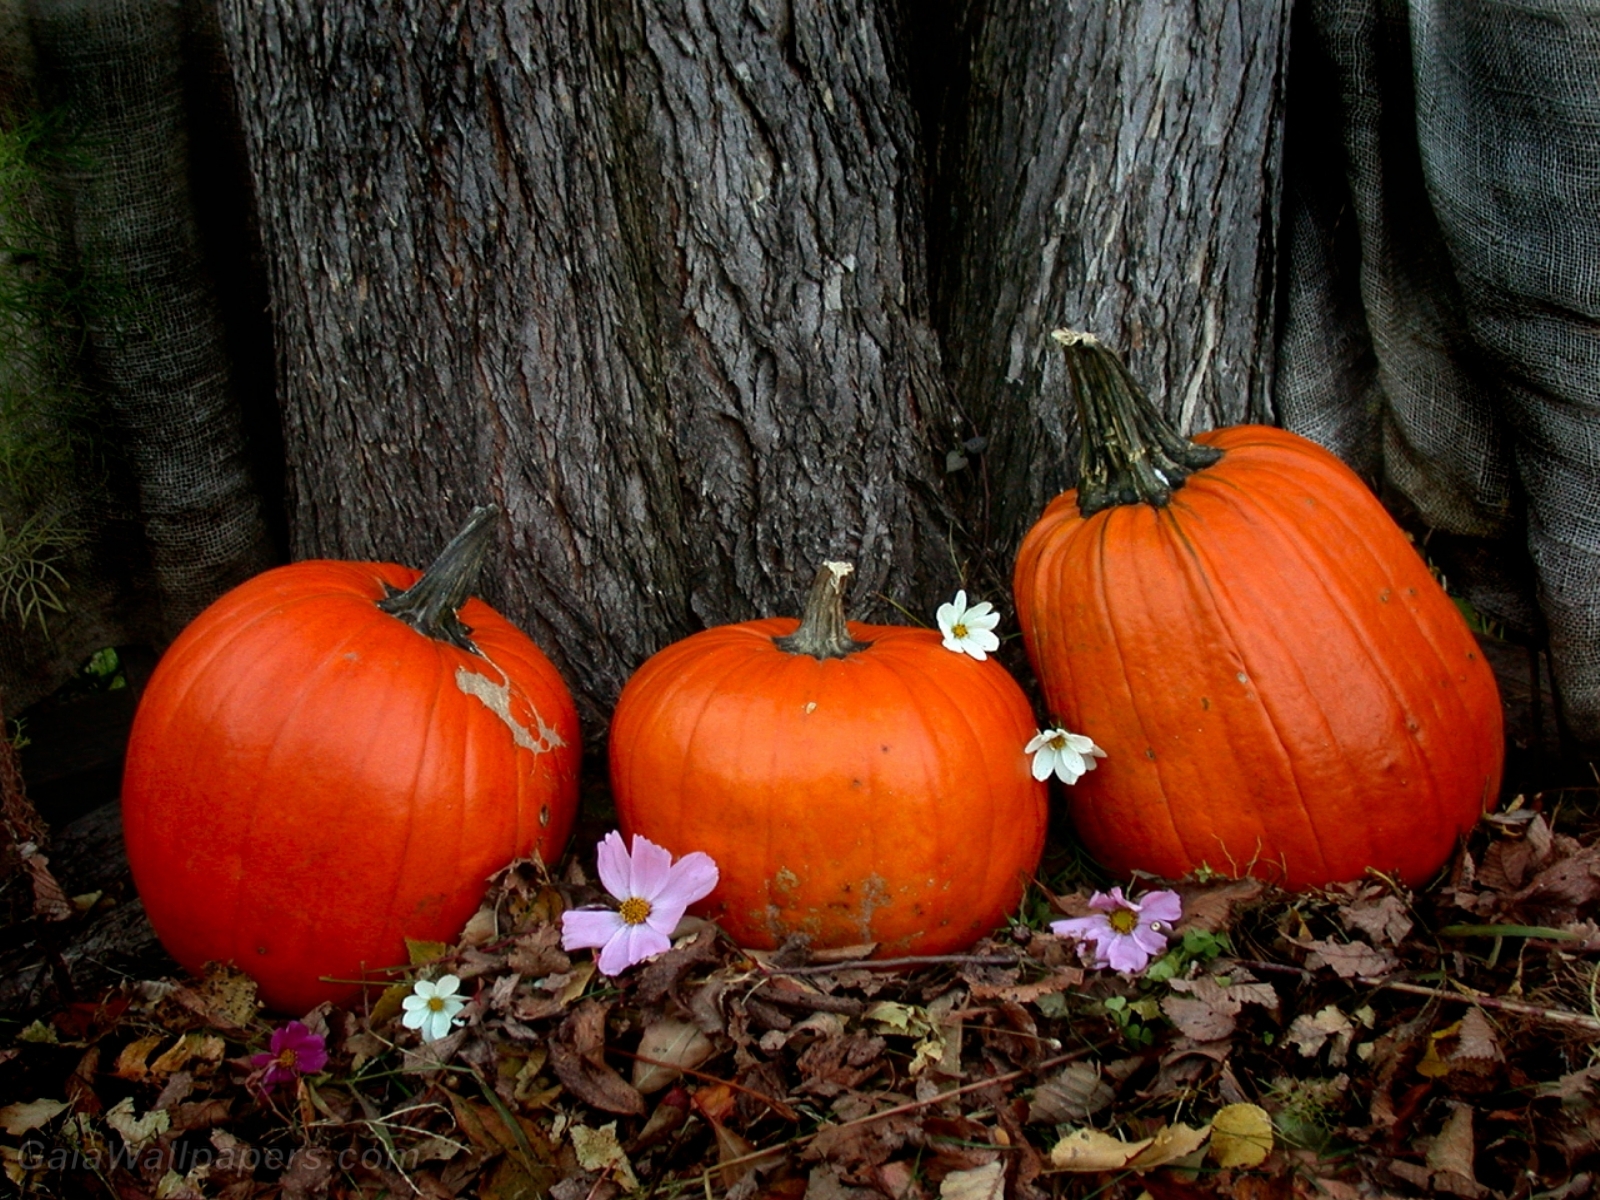 Pumpkins in autumn - Free desktop wallpapers